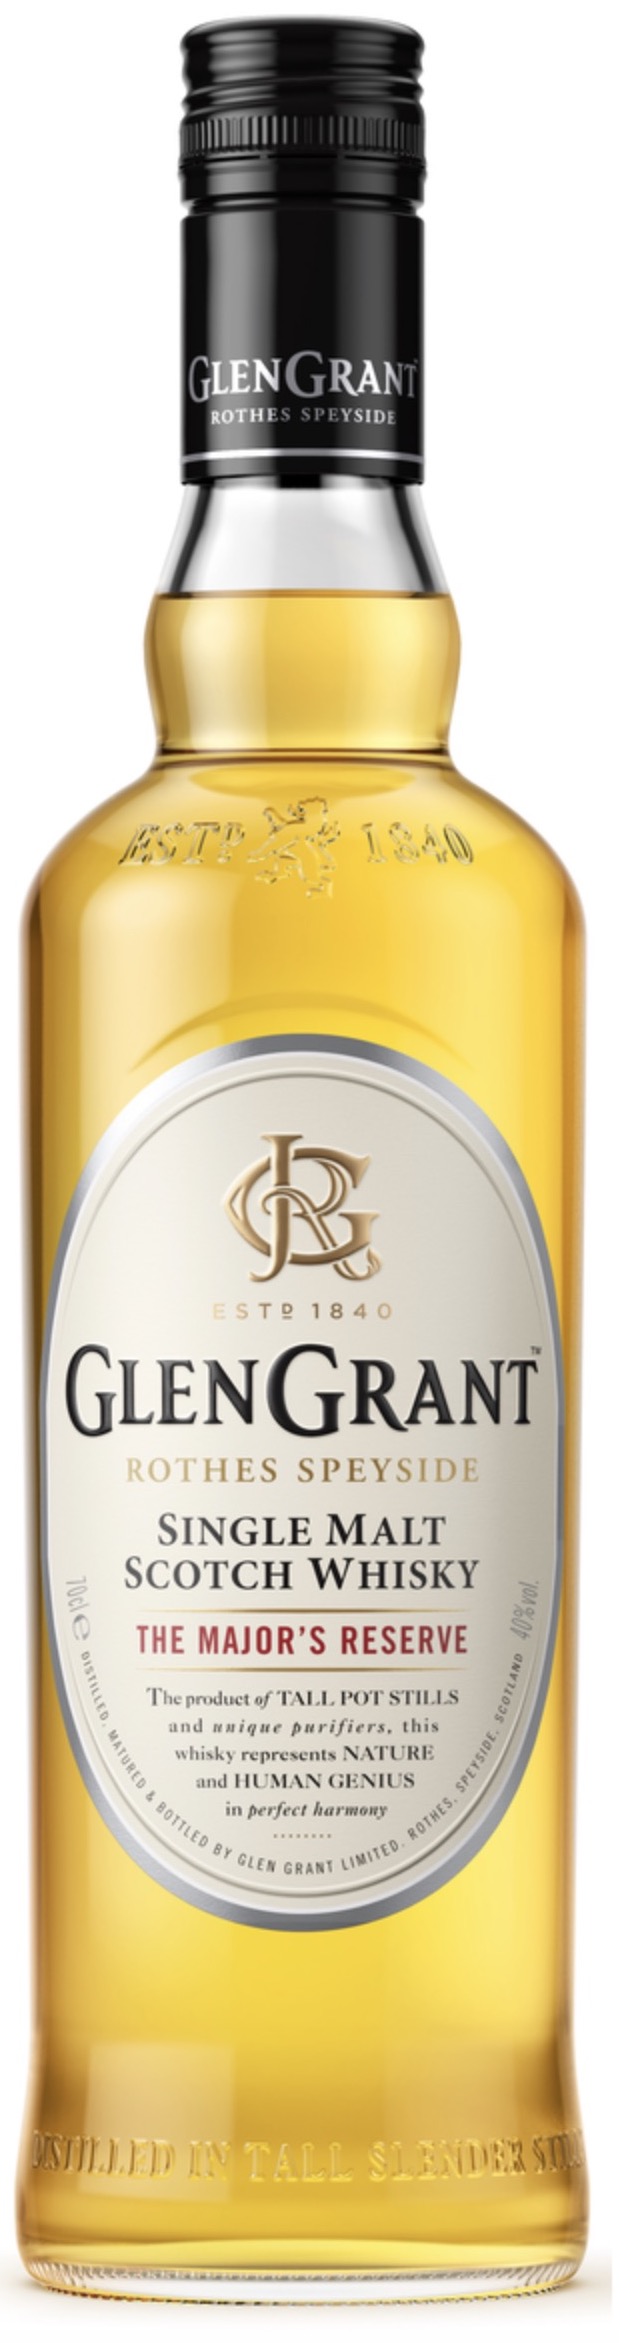 GLEN GRANT Single Malt Scotch Whisky The Mayor's Reserve 40% vol. 0,7L